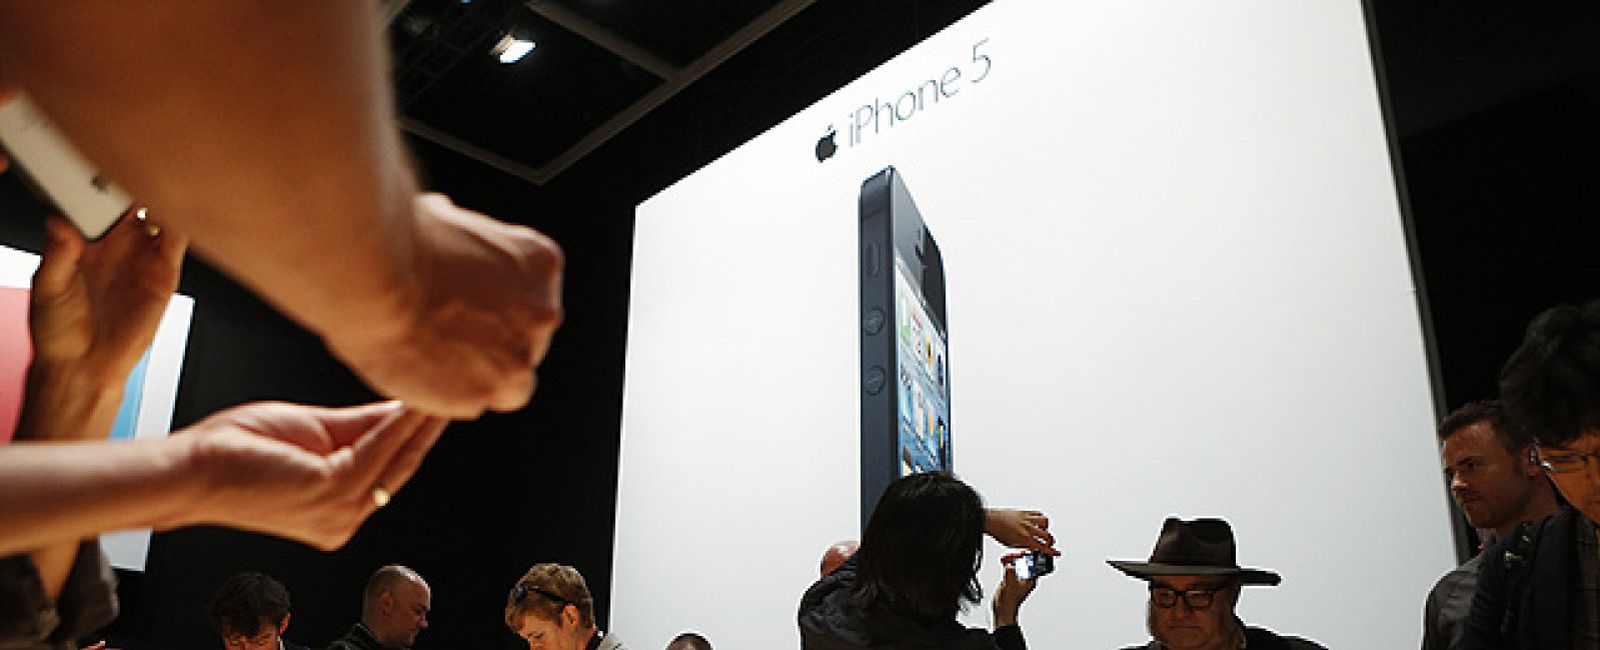 Foto: La "trampa" del iPhone 5, ¿es todo marketing?